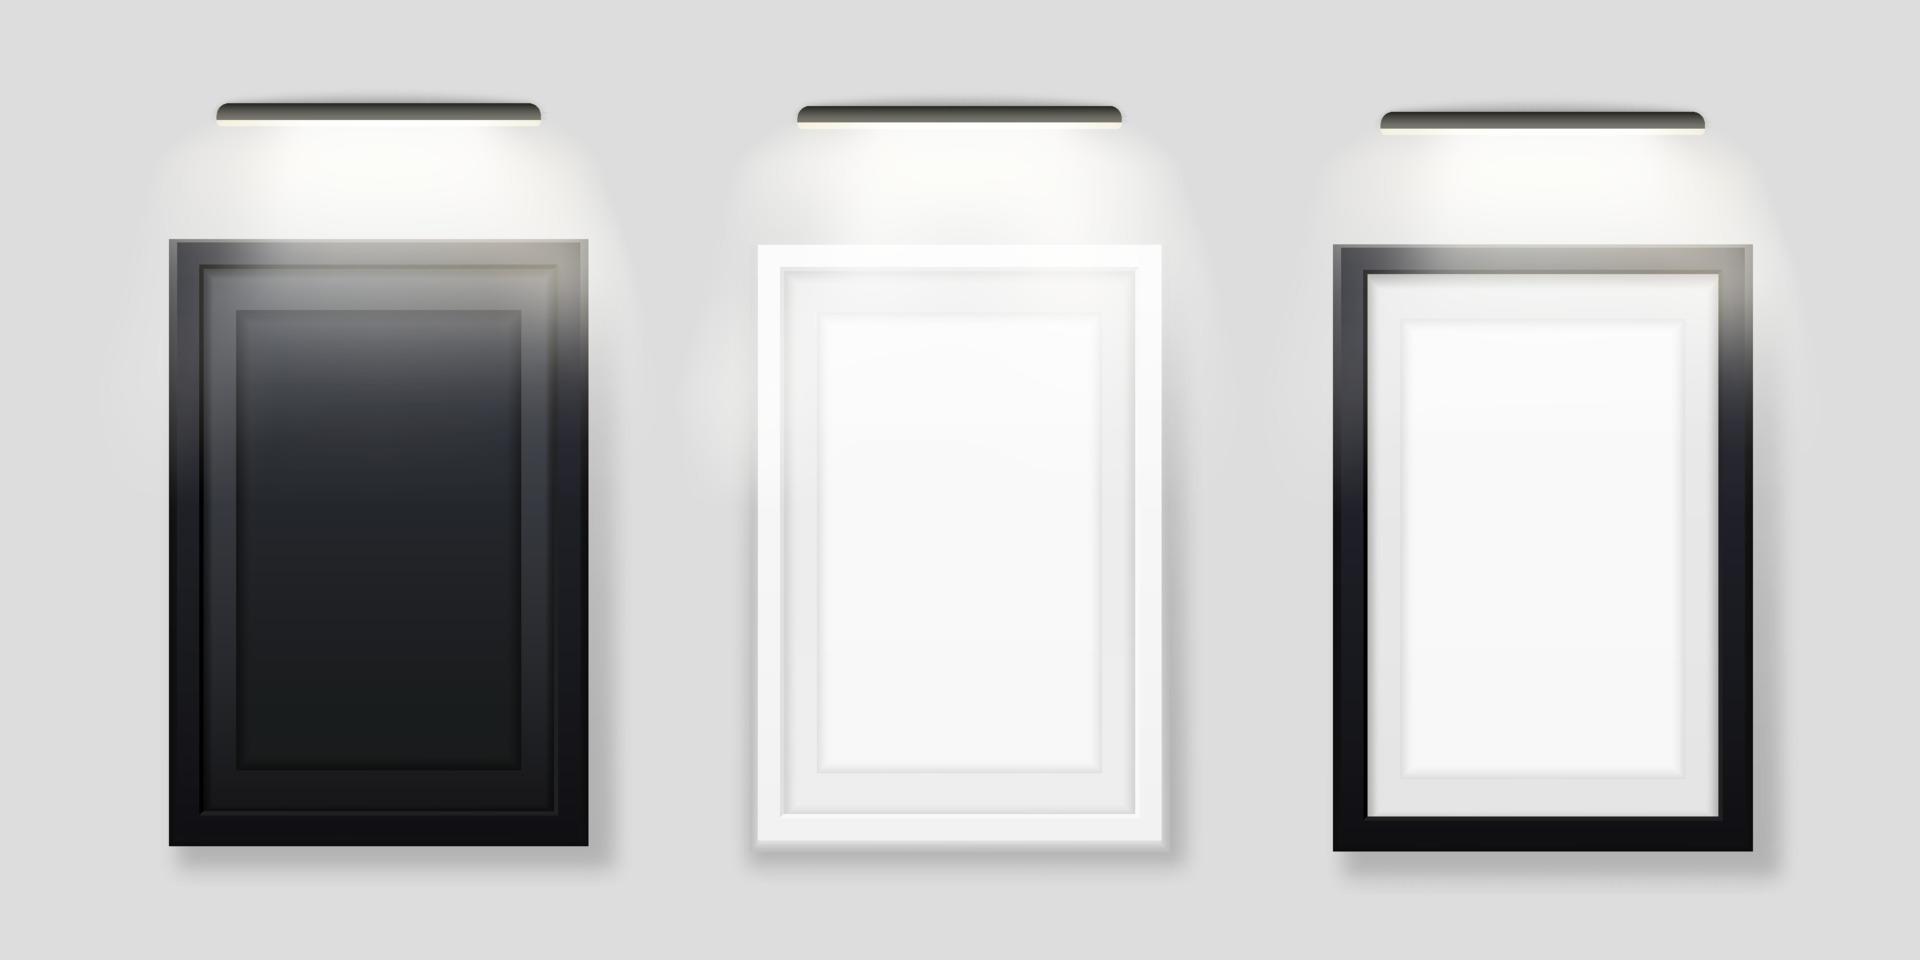 molduras para fotos com modelo retroiluminado led. imagem em branco preto e branco com lâmpada iluminada de cima vetor